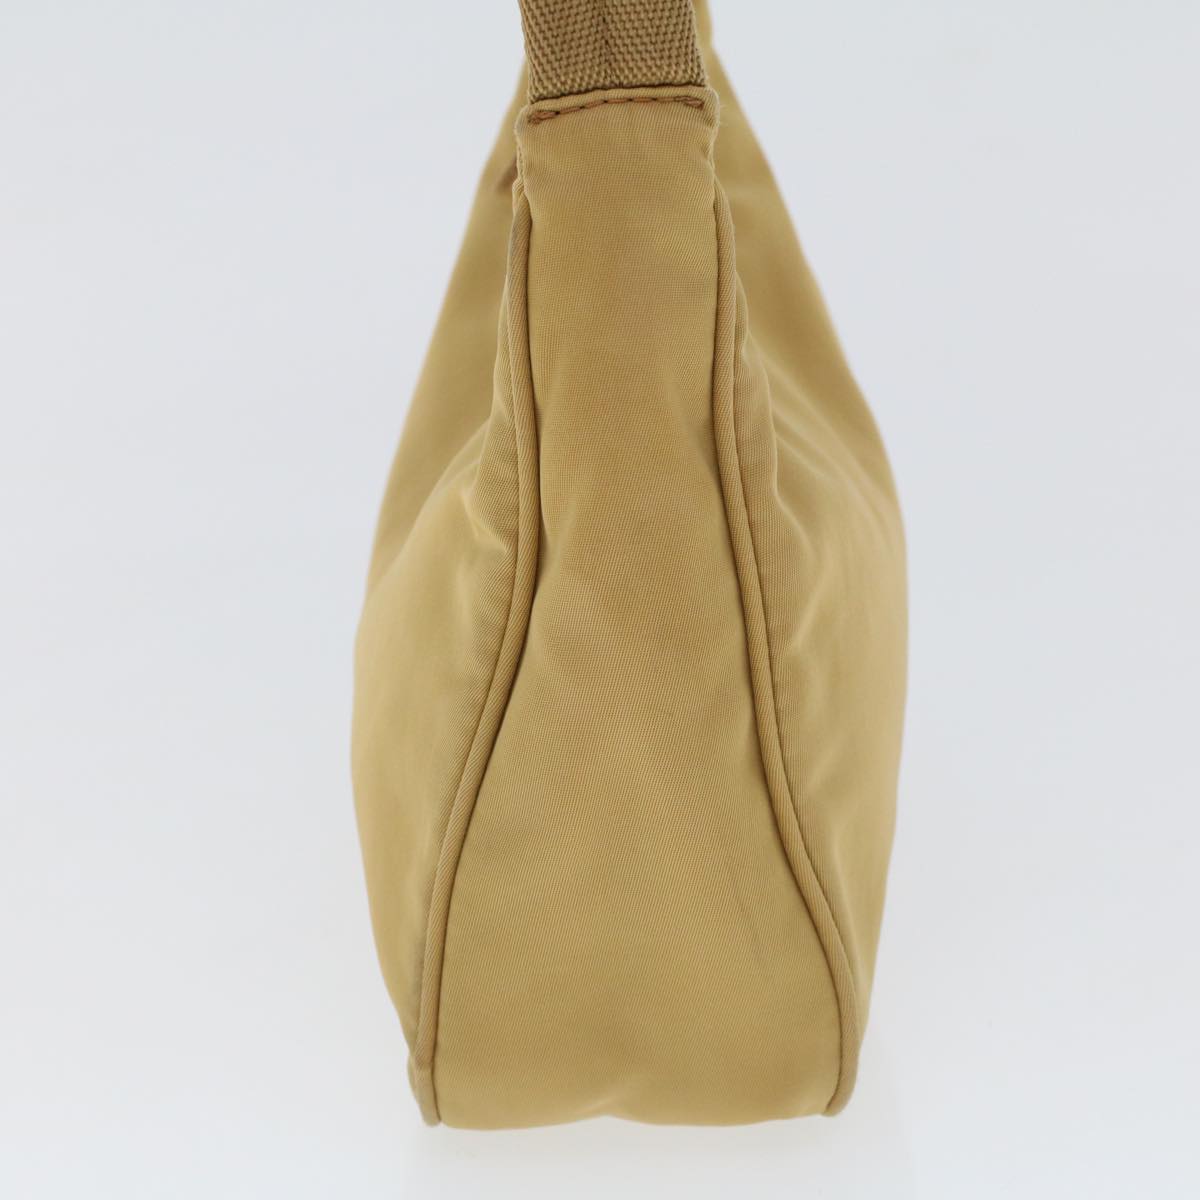 Prada Re-Nylon Handbag